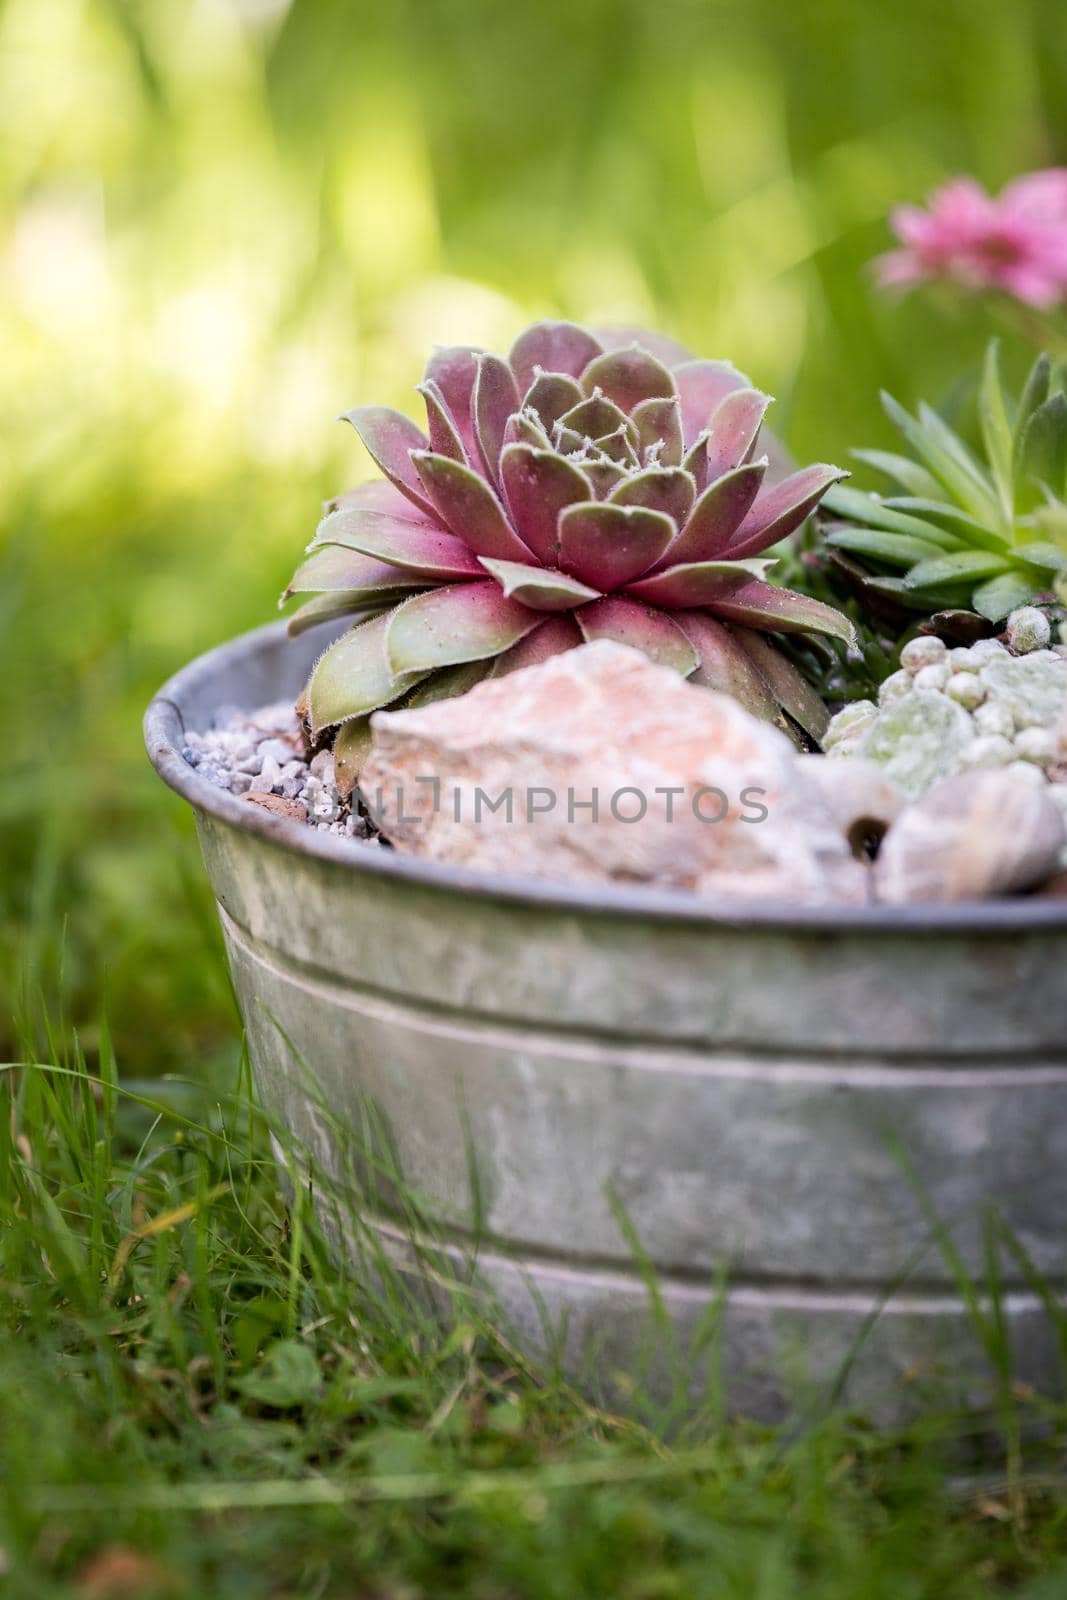 Houseleek in decorative flowerpot. Outdoors, green blurry background. by Daxenbichler